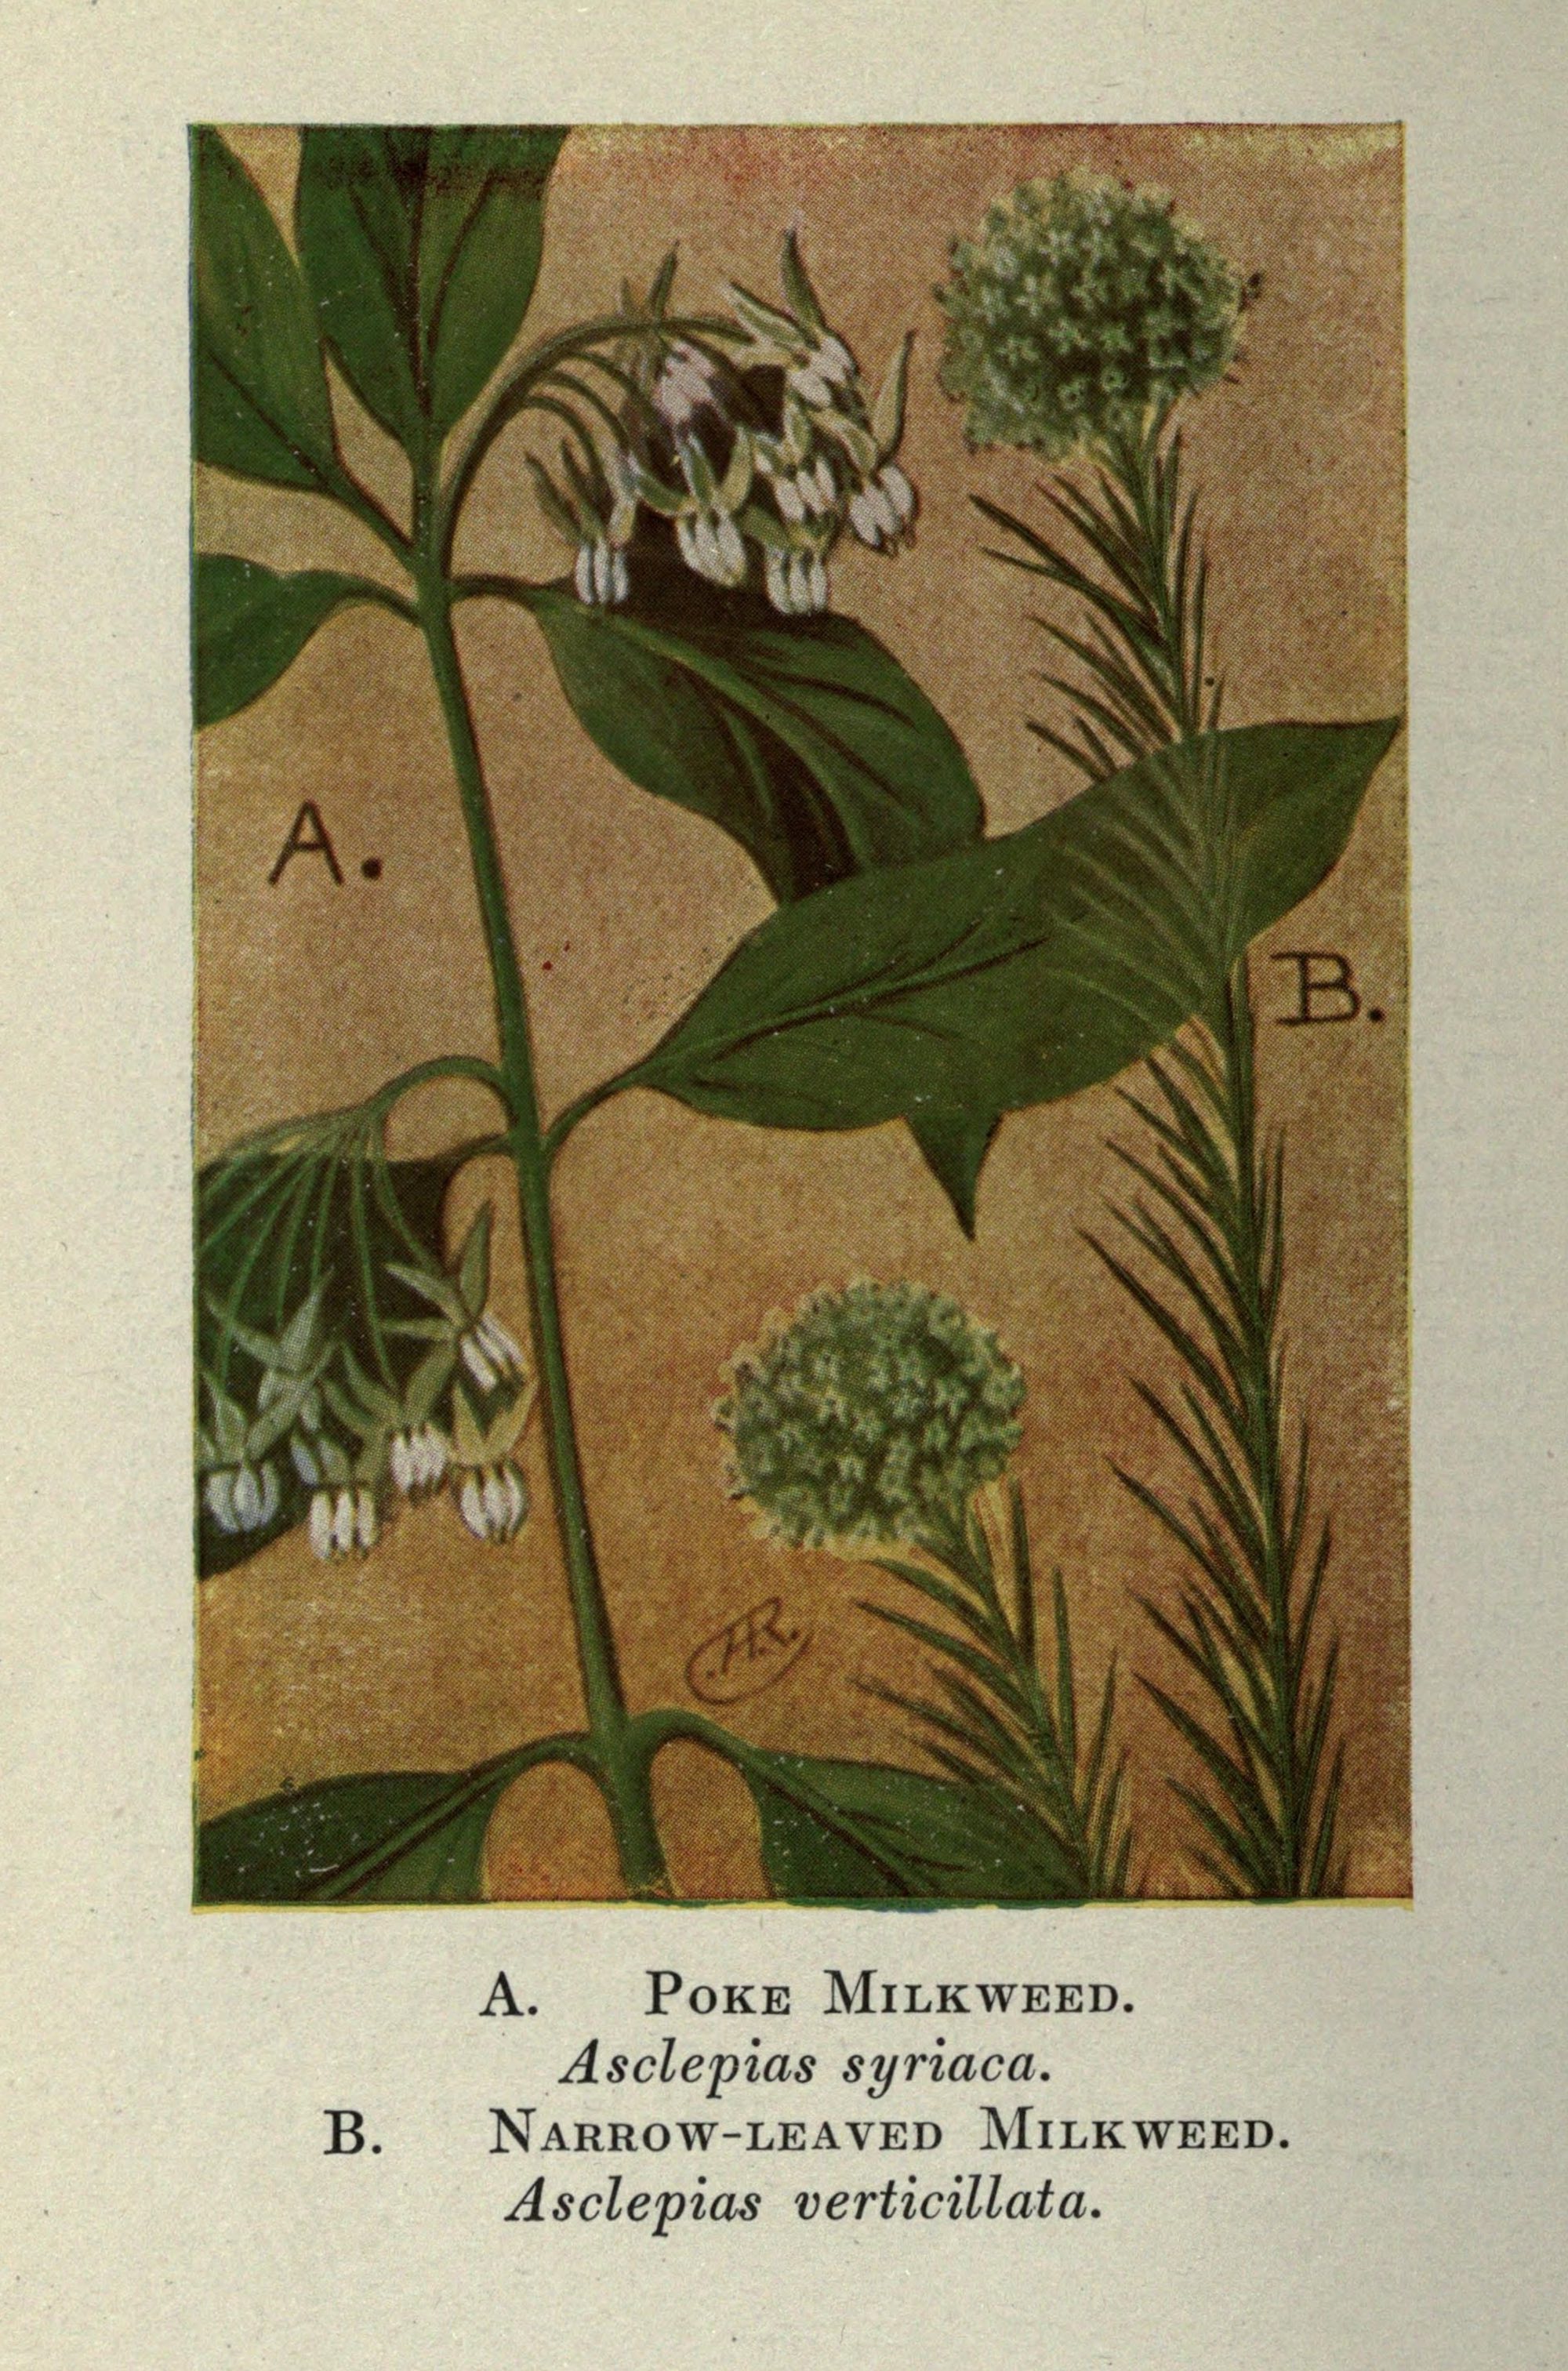 1910 Poke Milkweed botanical illustration.